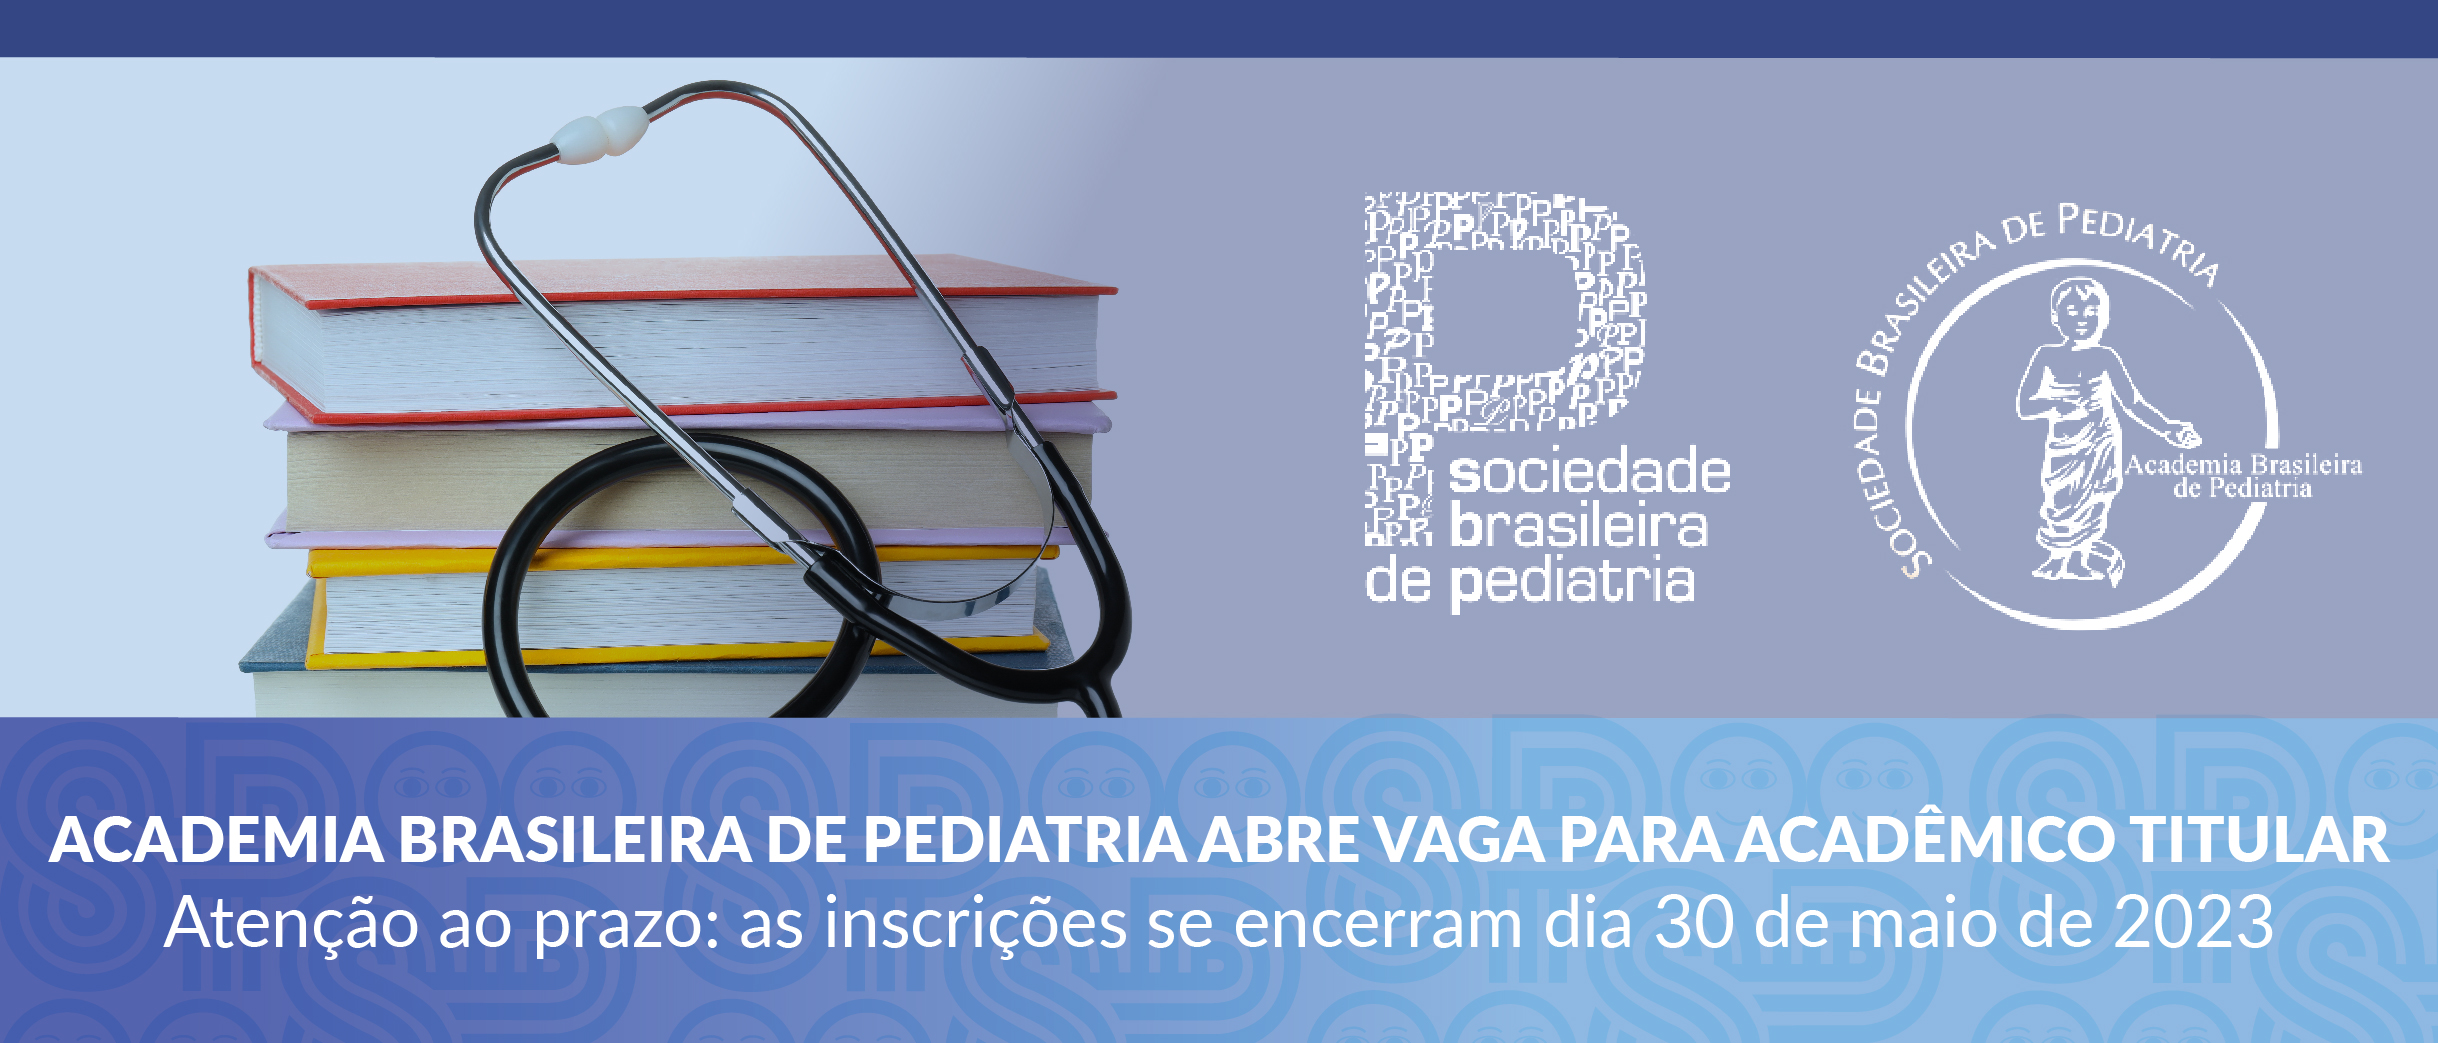 Academia Brasileira de Pediatria abre vaga para Acadêmico Titular